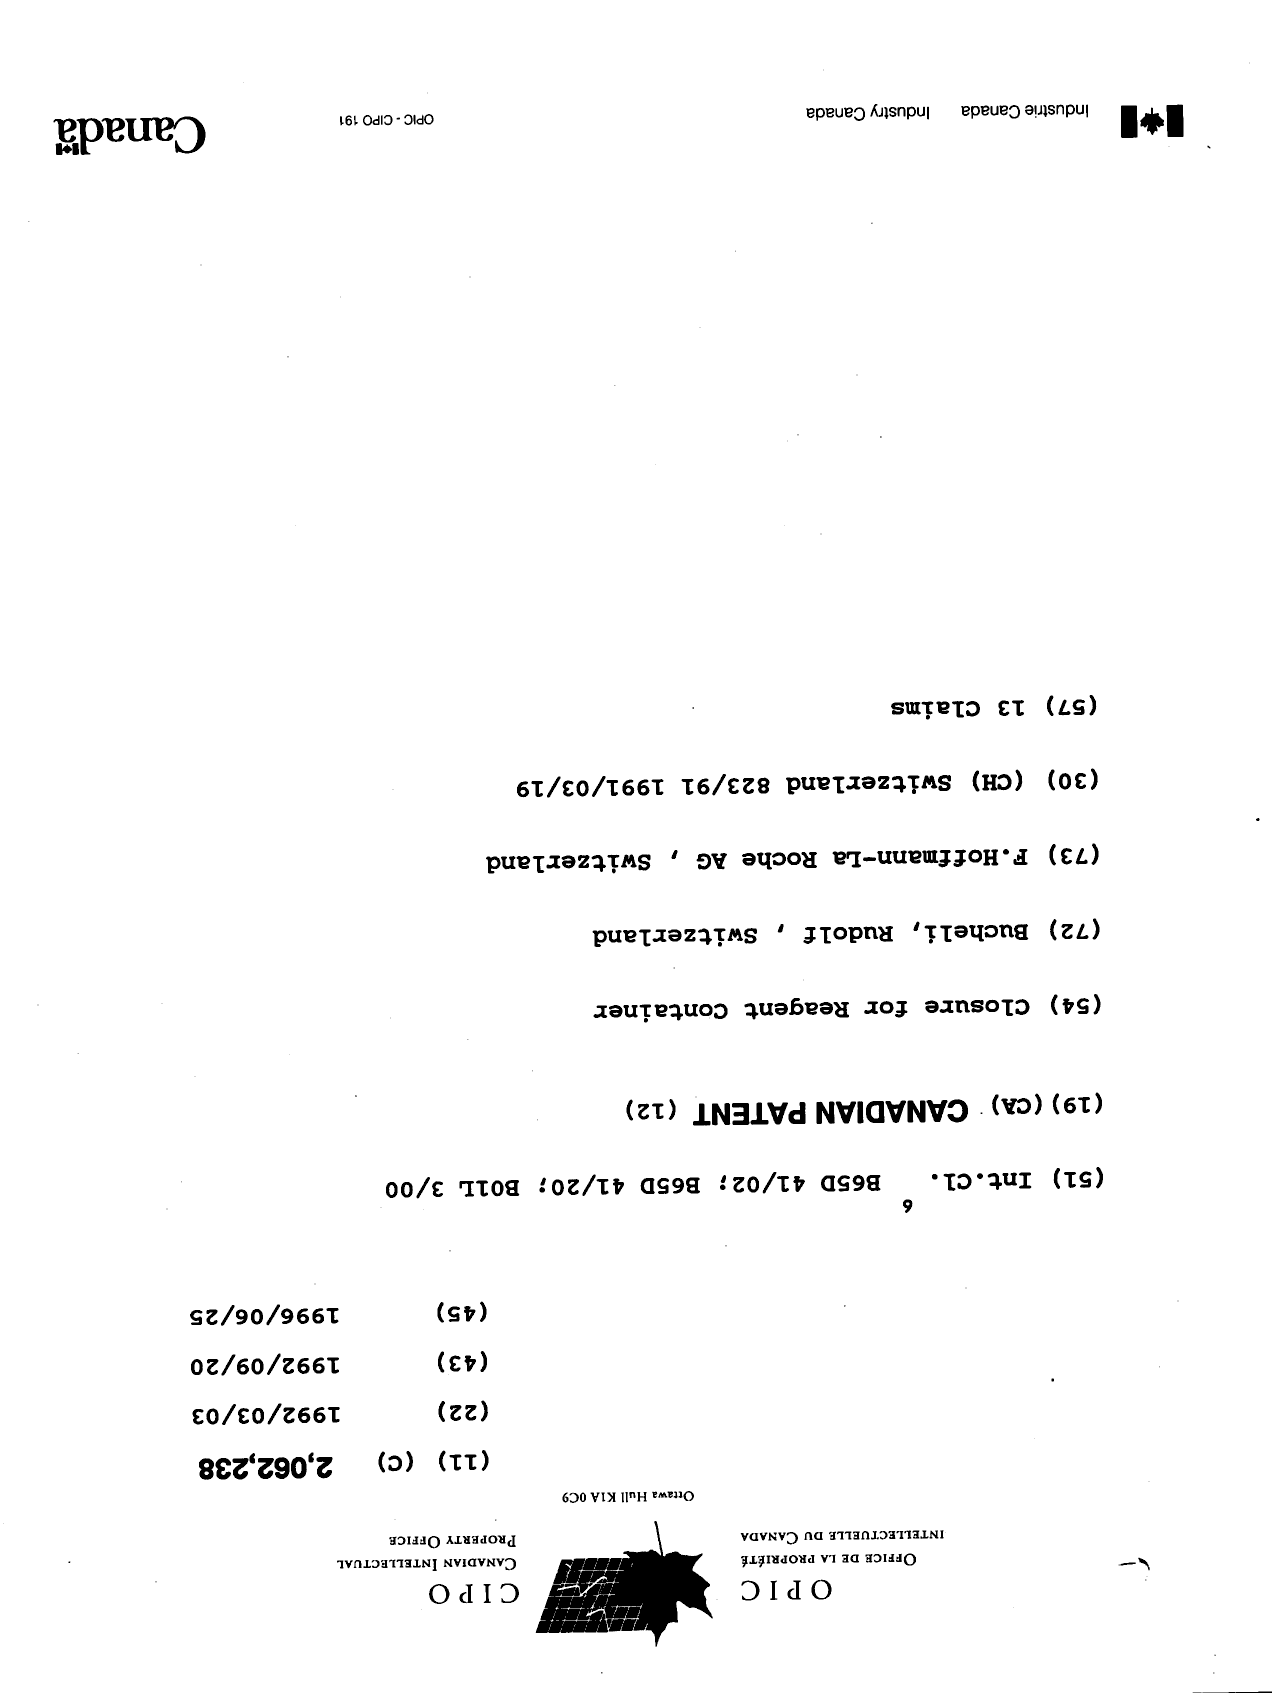 Document de brevet canadien 2062238. Page couverture 19951225. Image 1 de 1